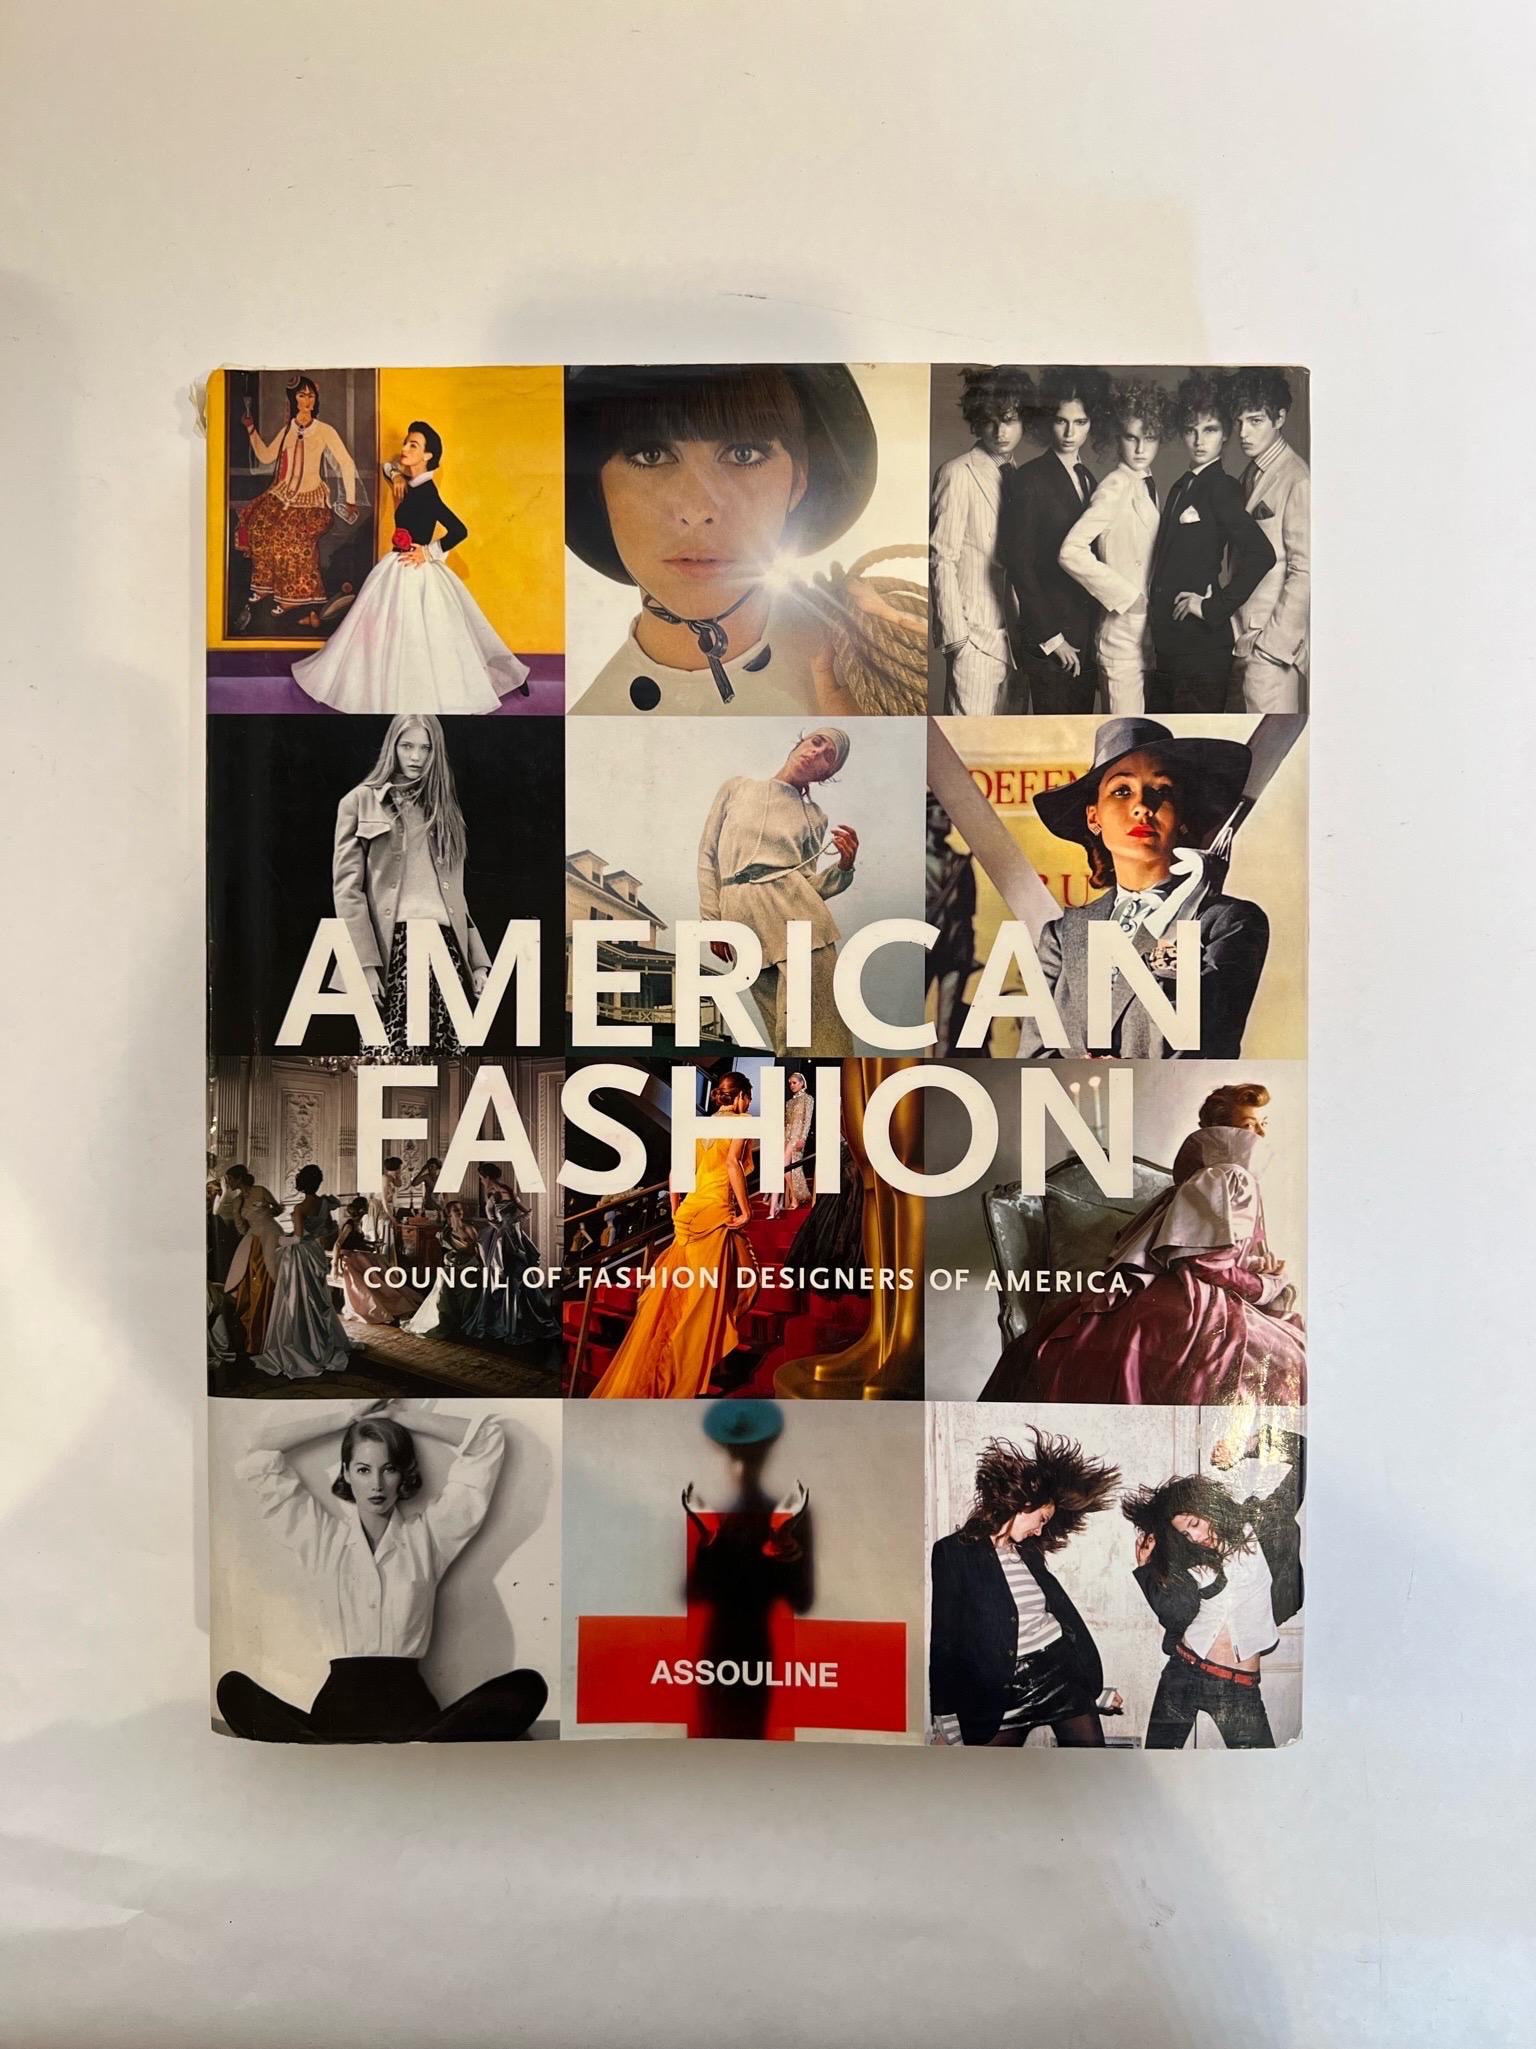 American Fashion Hardcover Coffee Table Book Assouline 2007.
American Fashion d'ASSOULINE, publié en 2007, est un aperçu complet et magnifiquement illustré de l'histoire de la mode aux États-Unis.

Publié en 2007
Format:Couverture